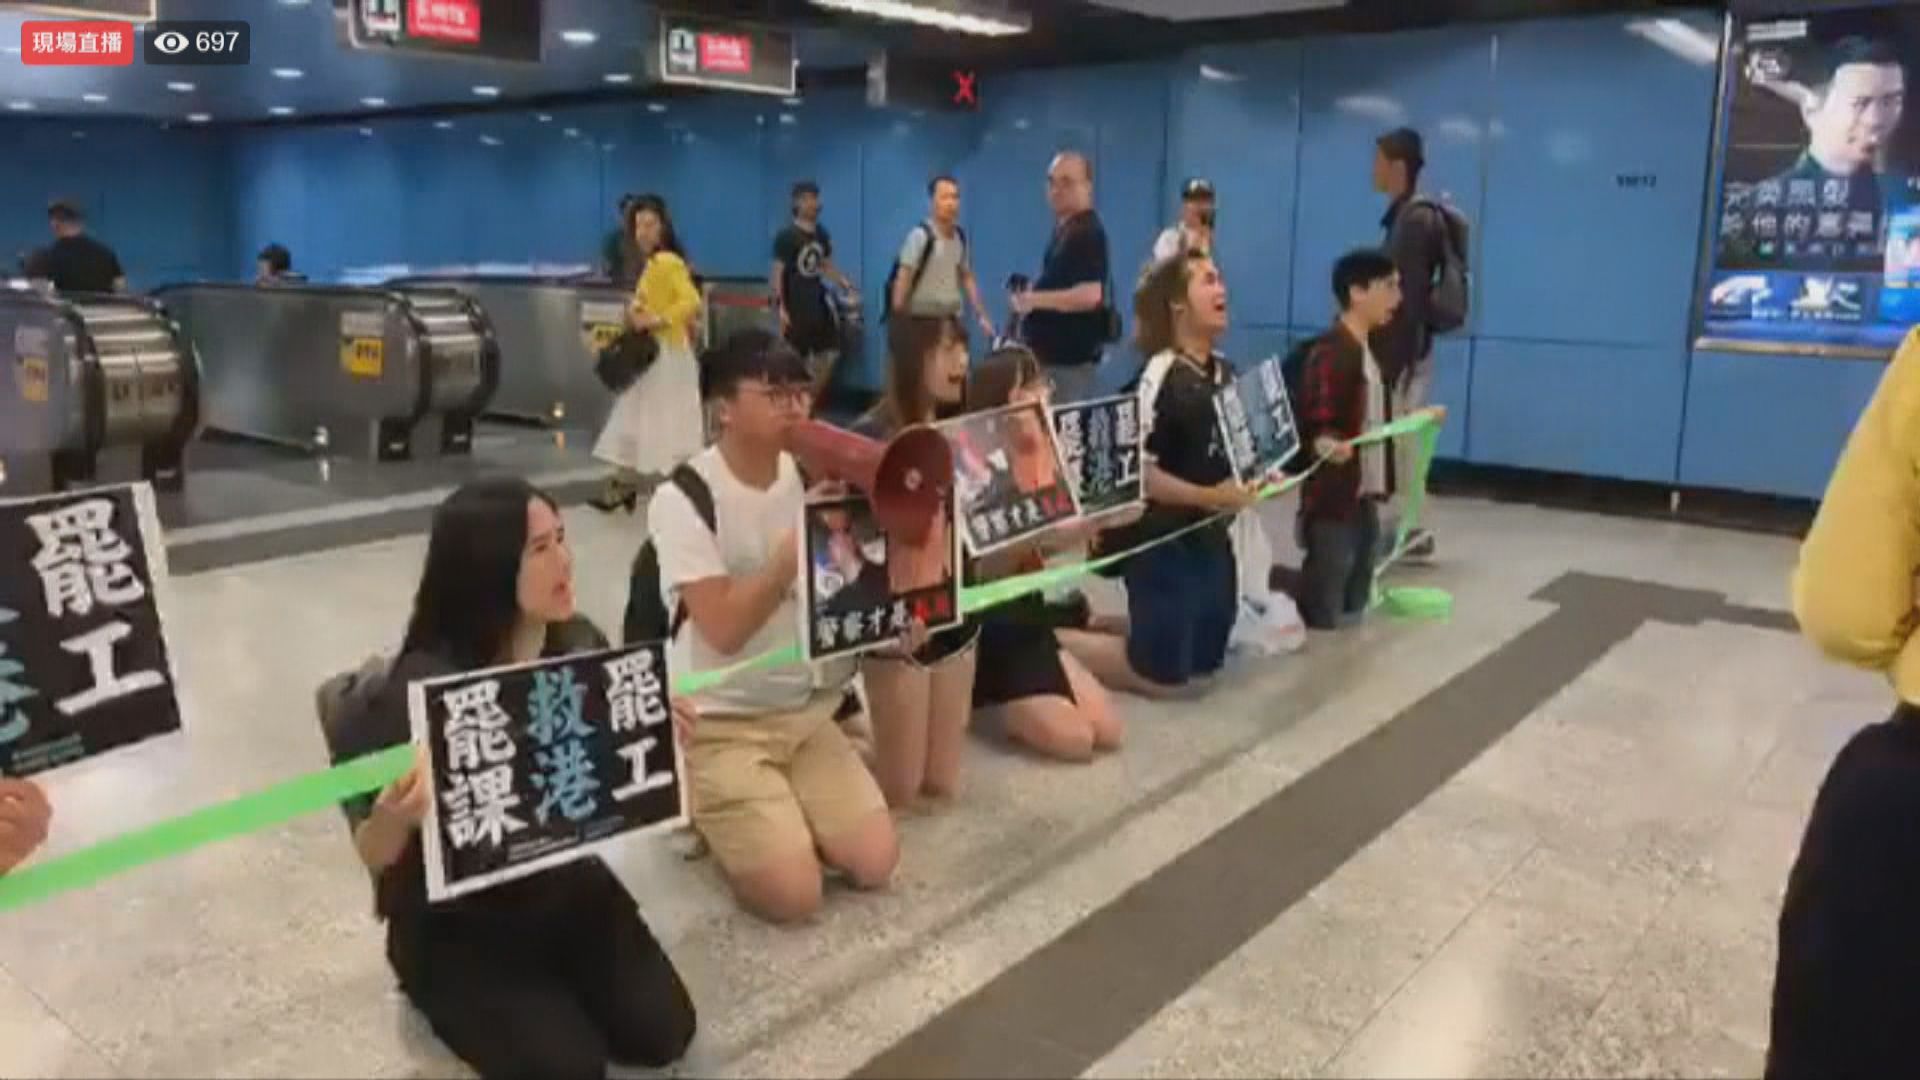 香港眾志美孚站抗議修訂逃犯條例